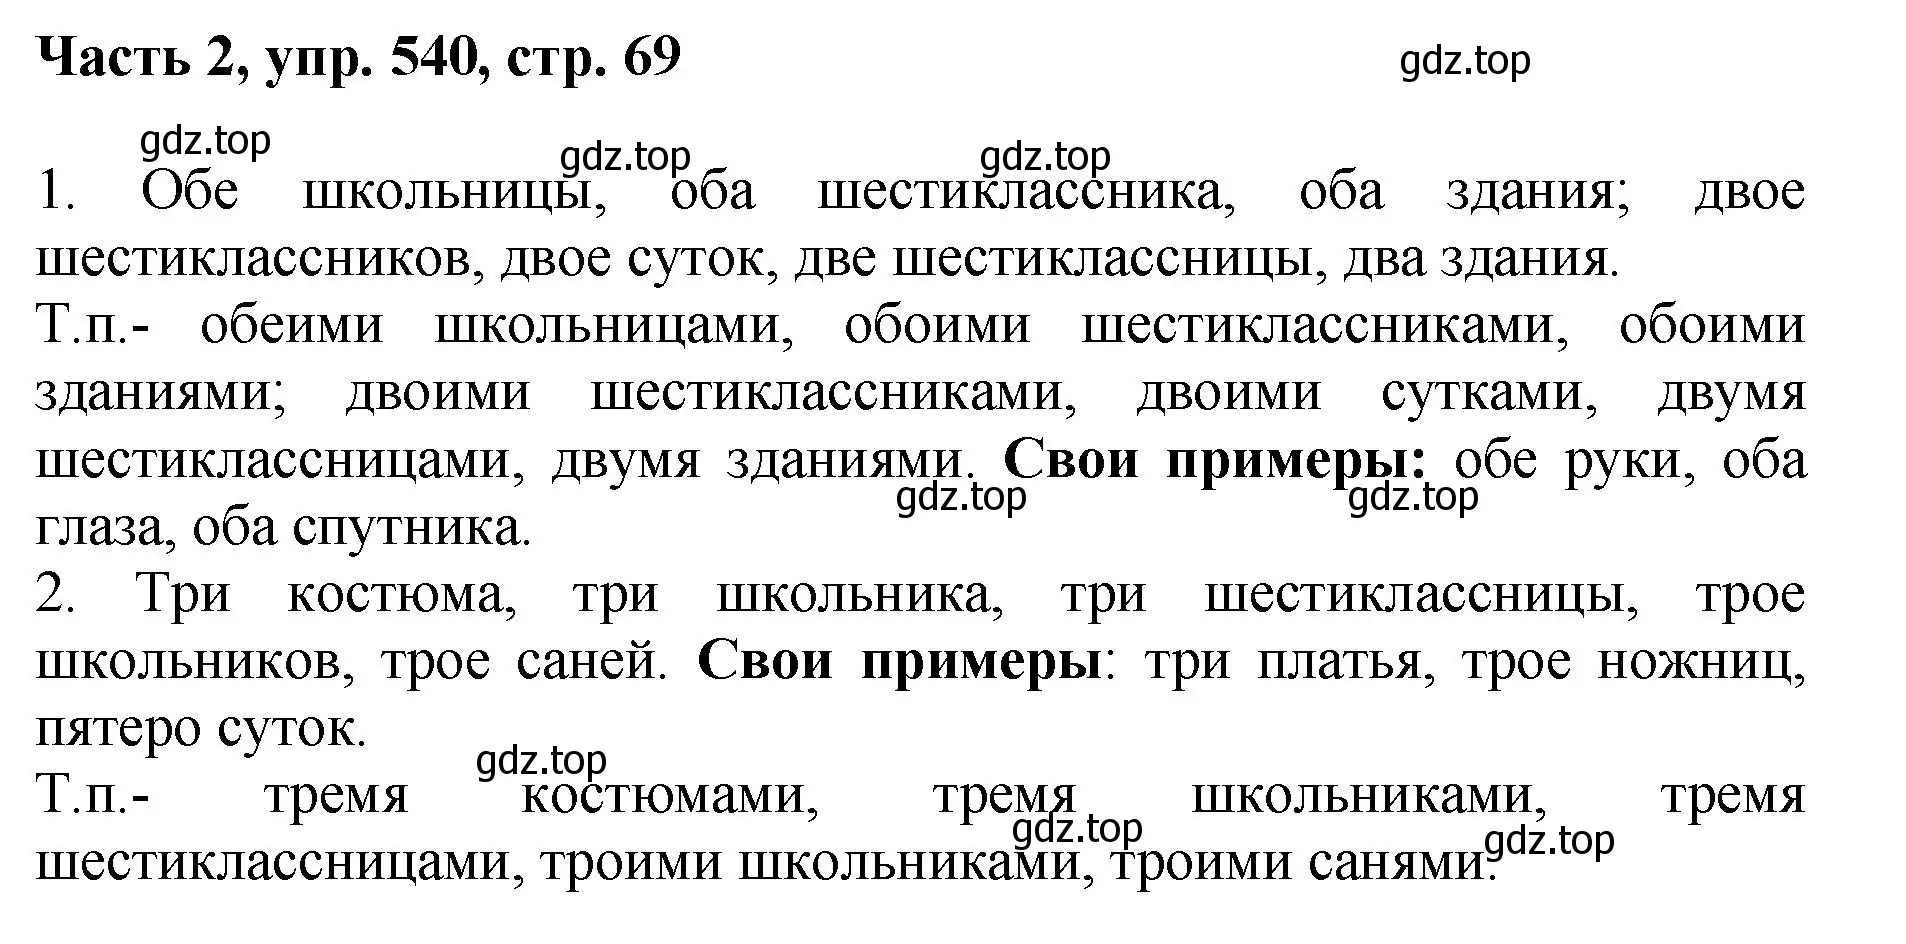 Решение номер 540 (страница 69) гдз по русскому языку 6 класс Баранов, Ладыженская, учебник 2 часть